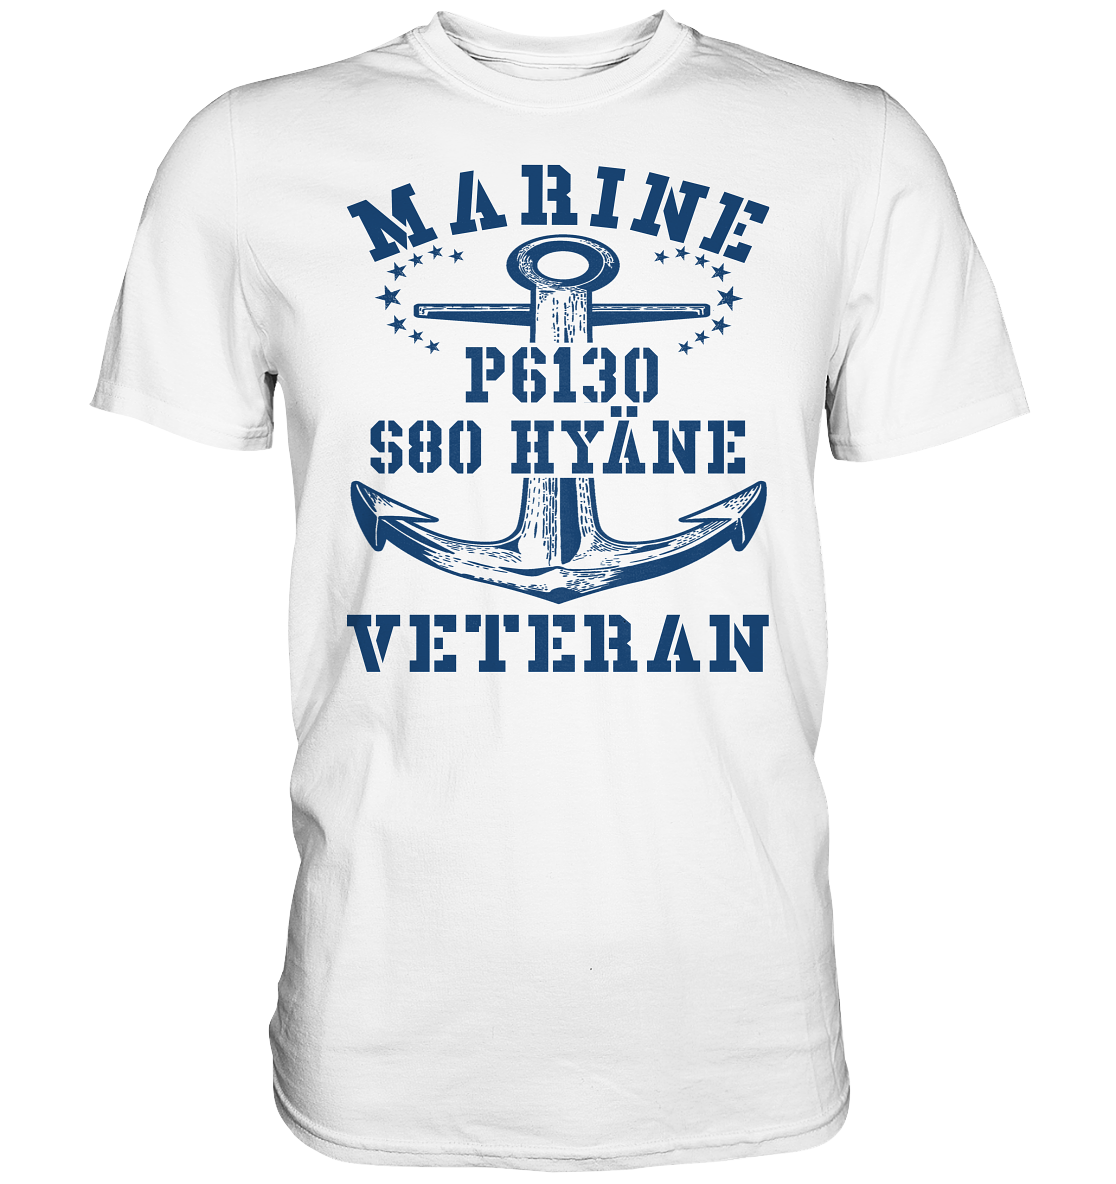 FK-Schnellboot P6130 HYÄNE Marine Veteran - Premium Shirt